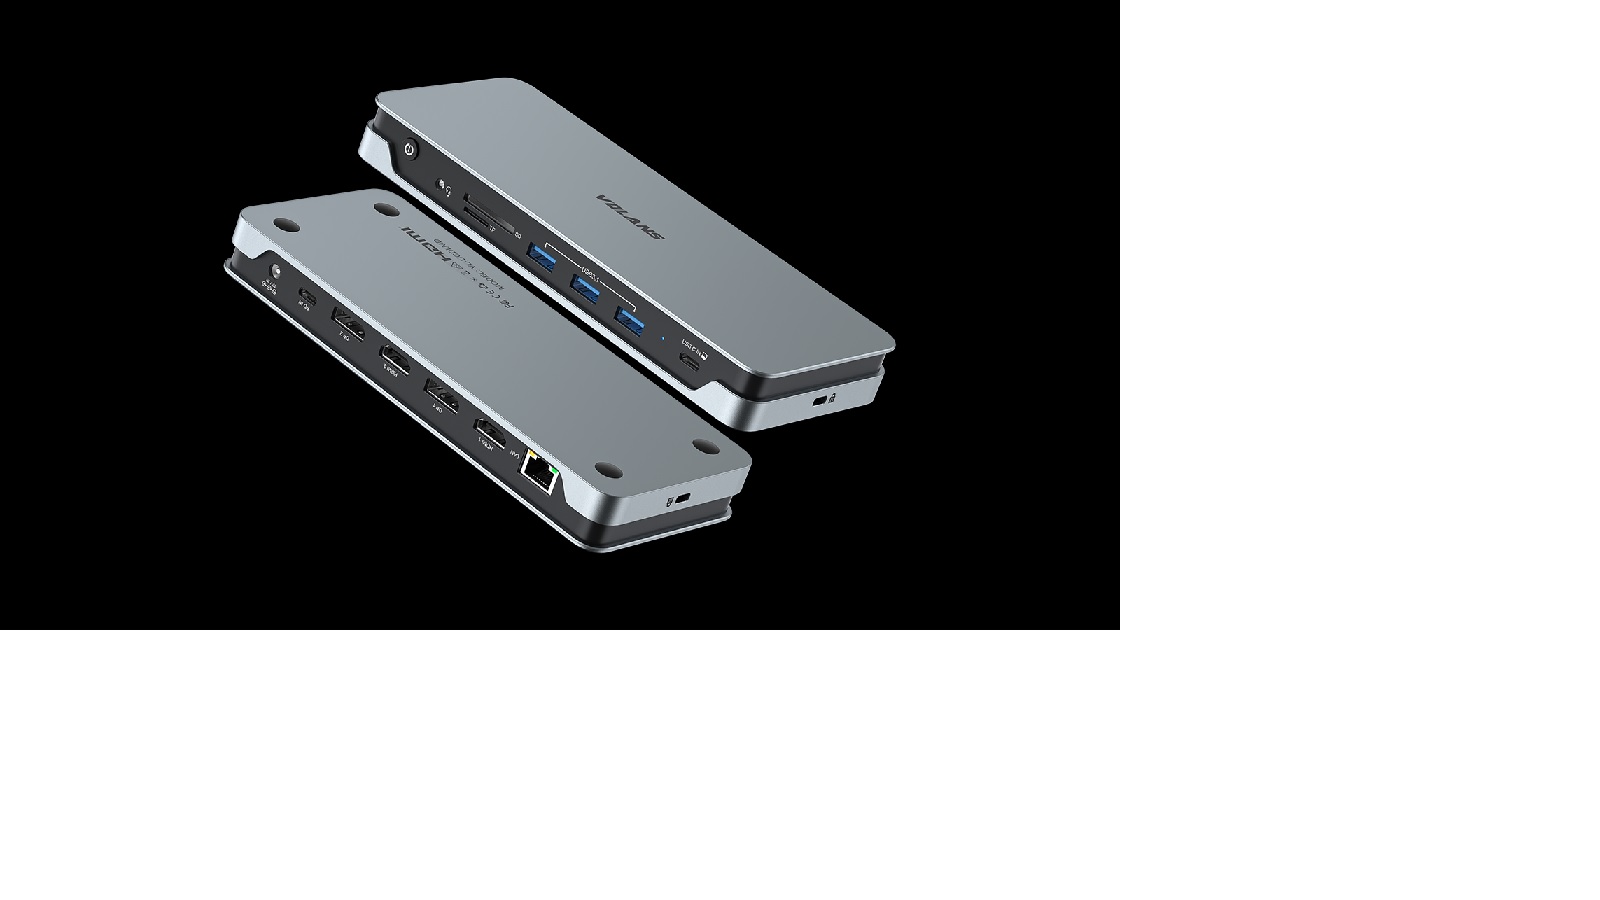  Aluminium 14-in-1 Quadruple 4K Display Multifunctional USB-C Docking Station  